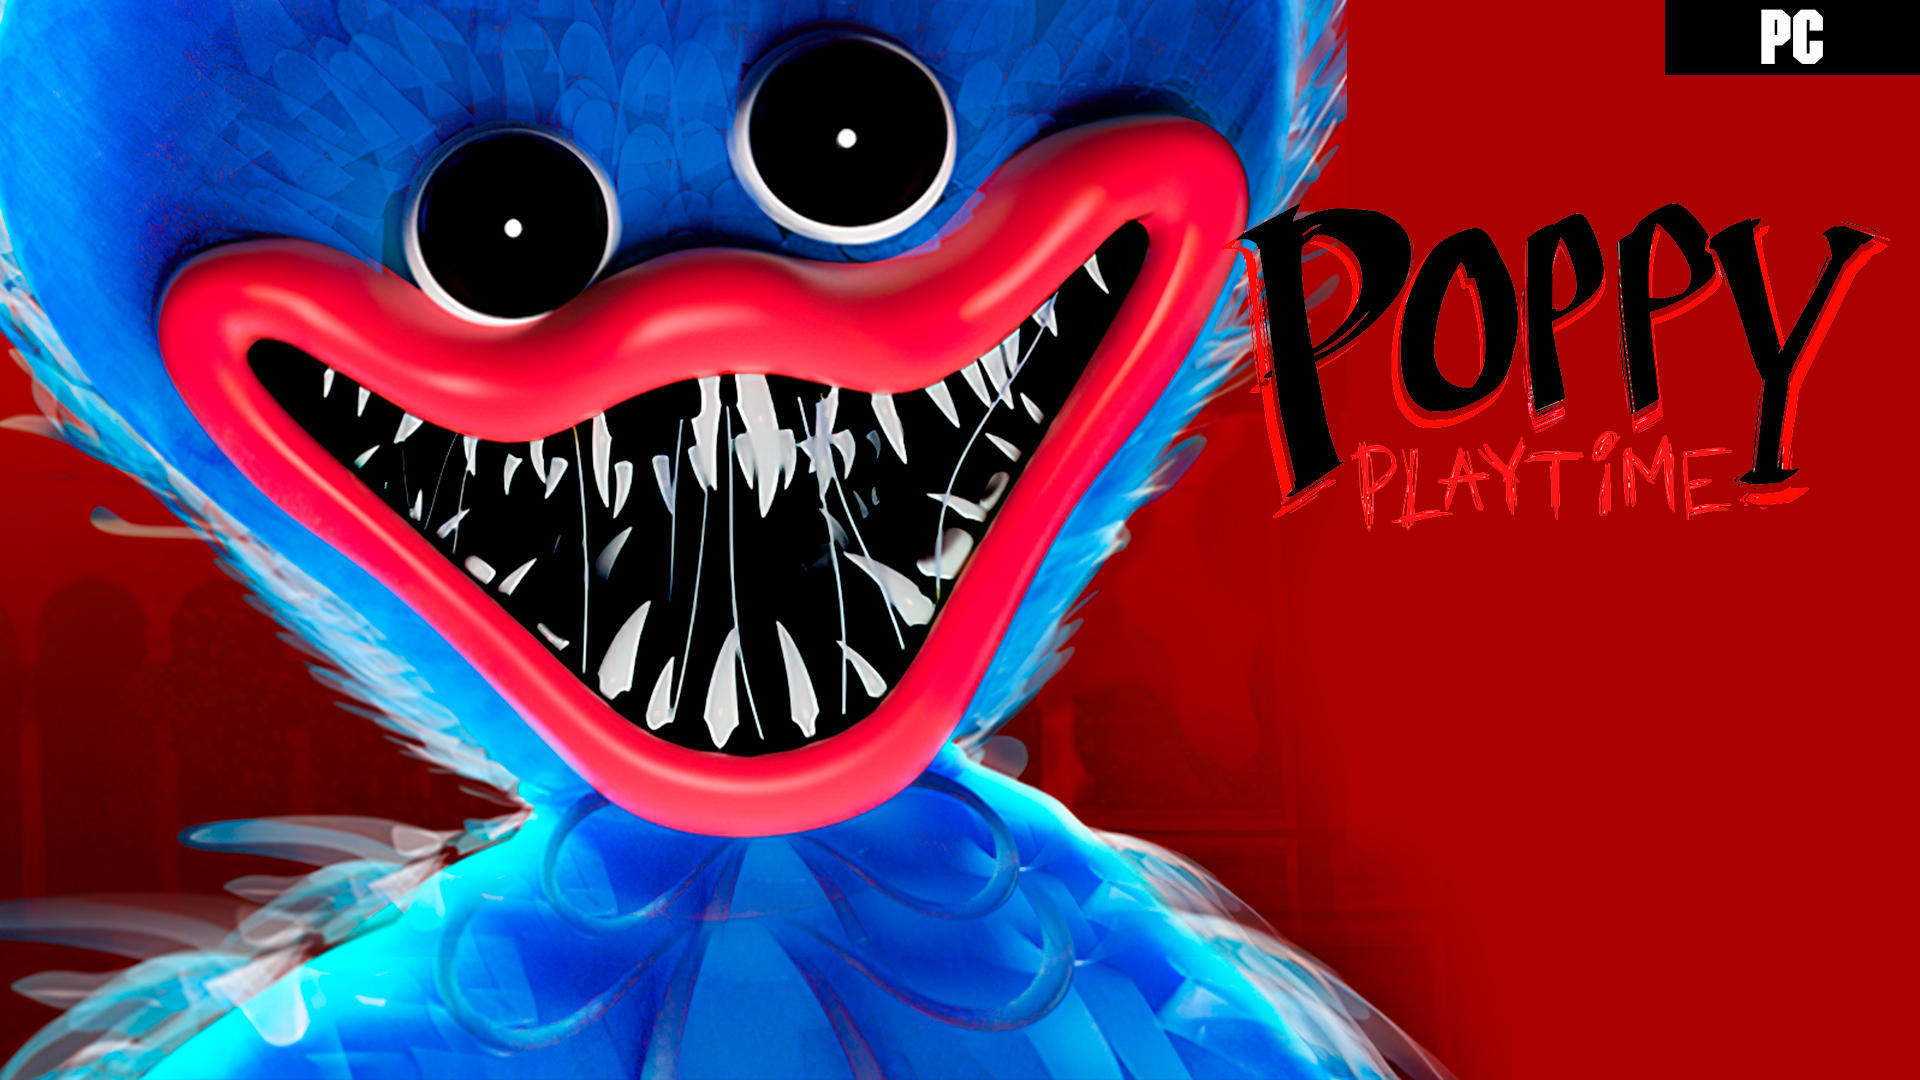 Requisitos para jugar a Poppy Playtime en PC